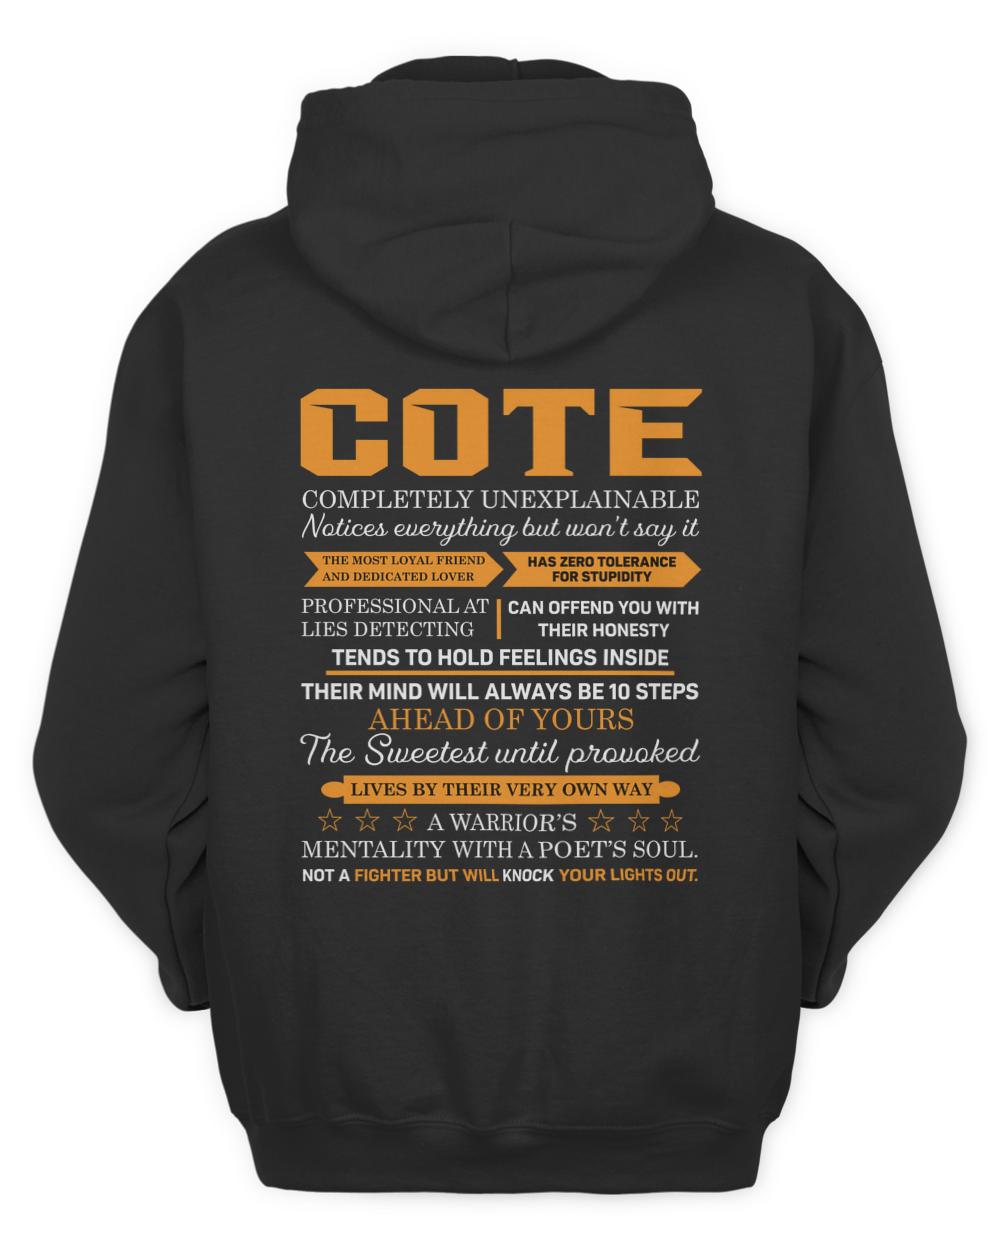 COTE-13K-N1-01